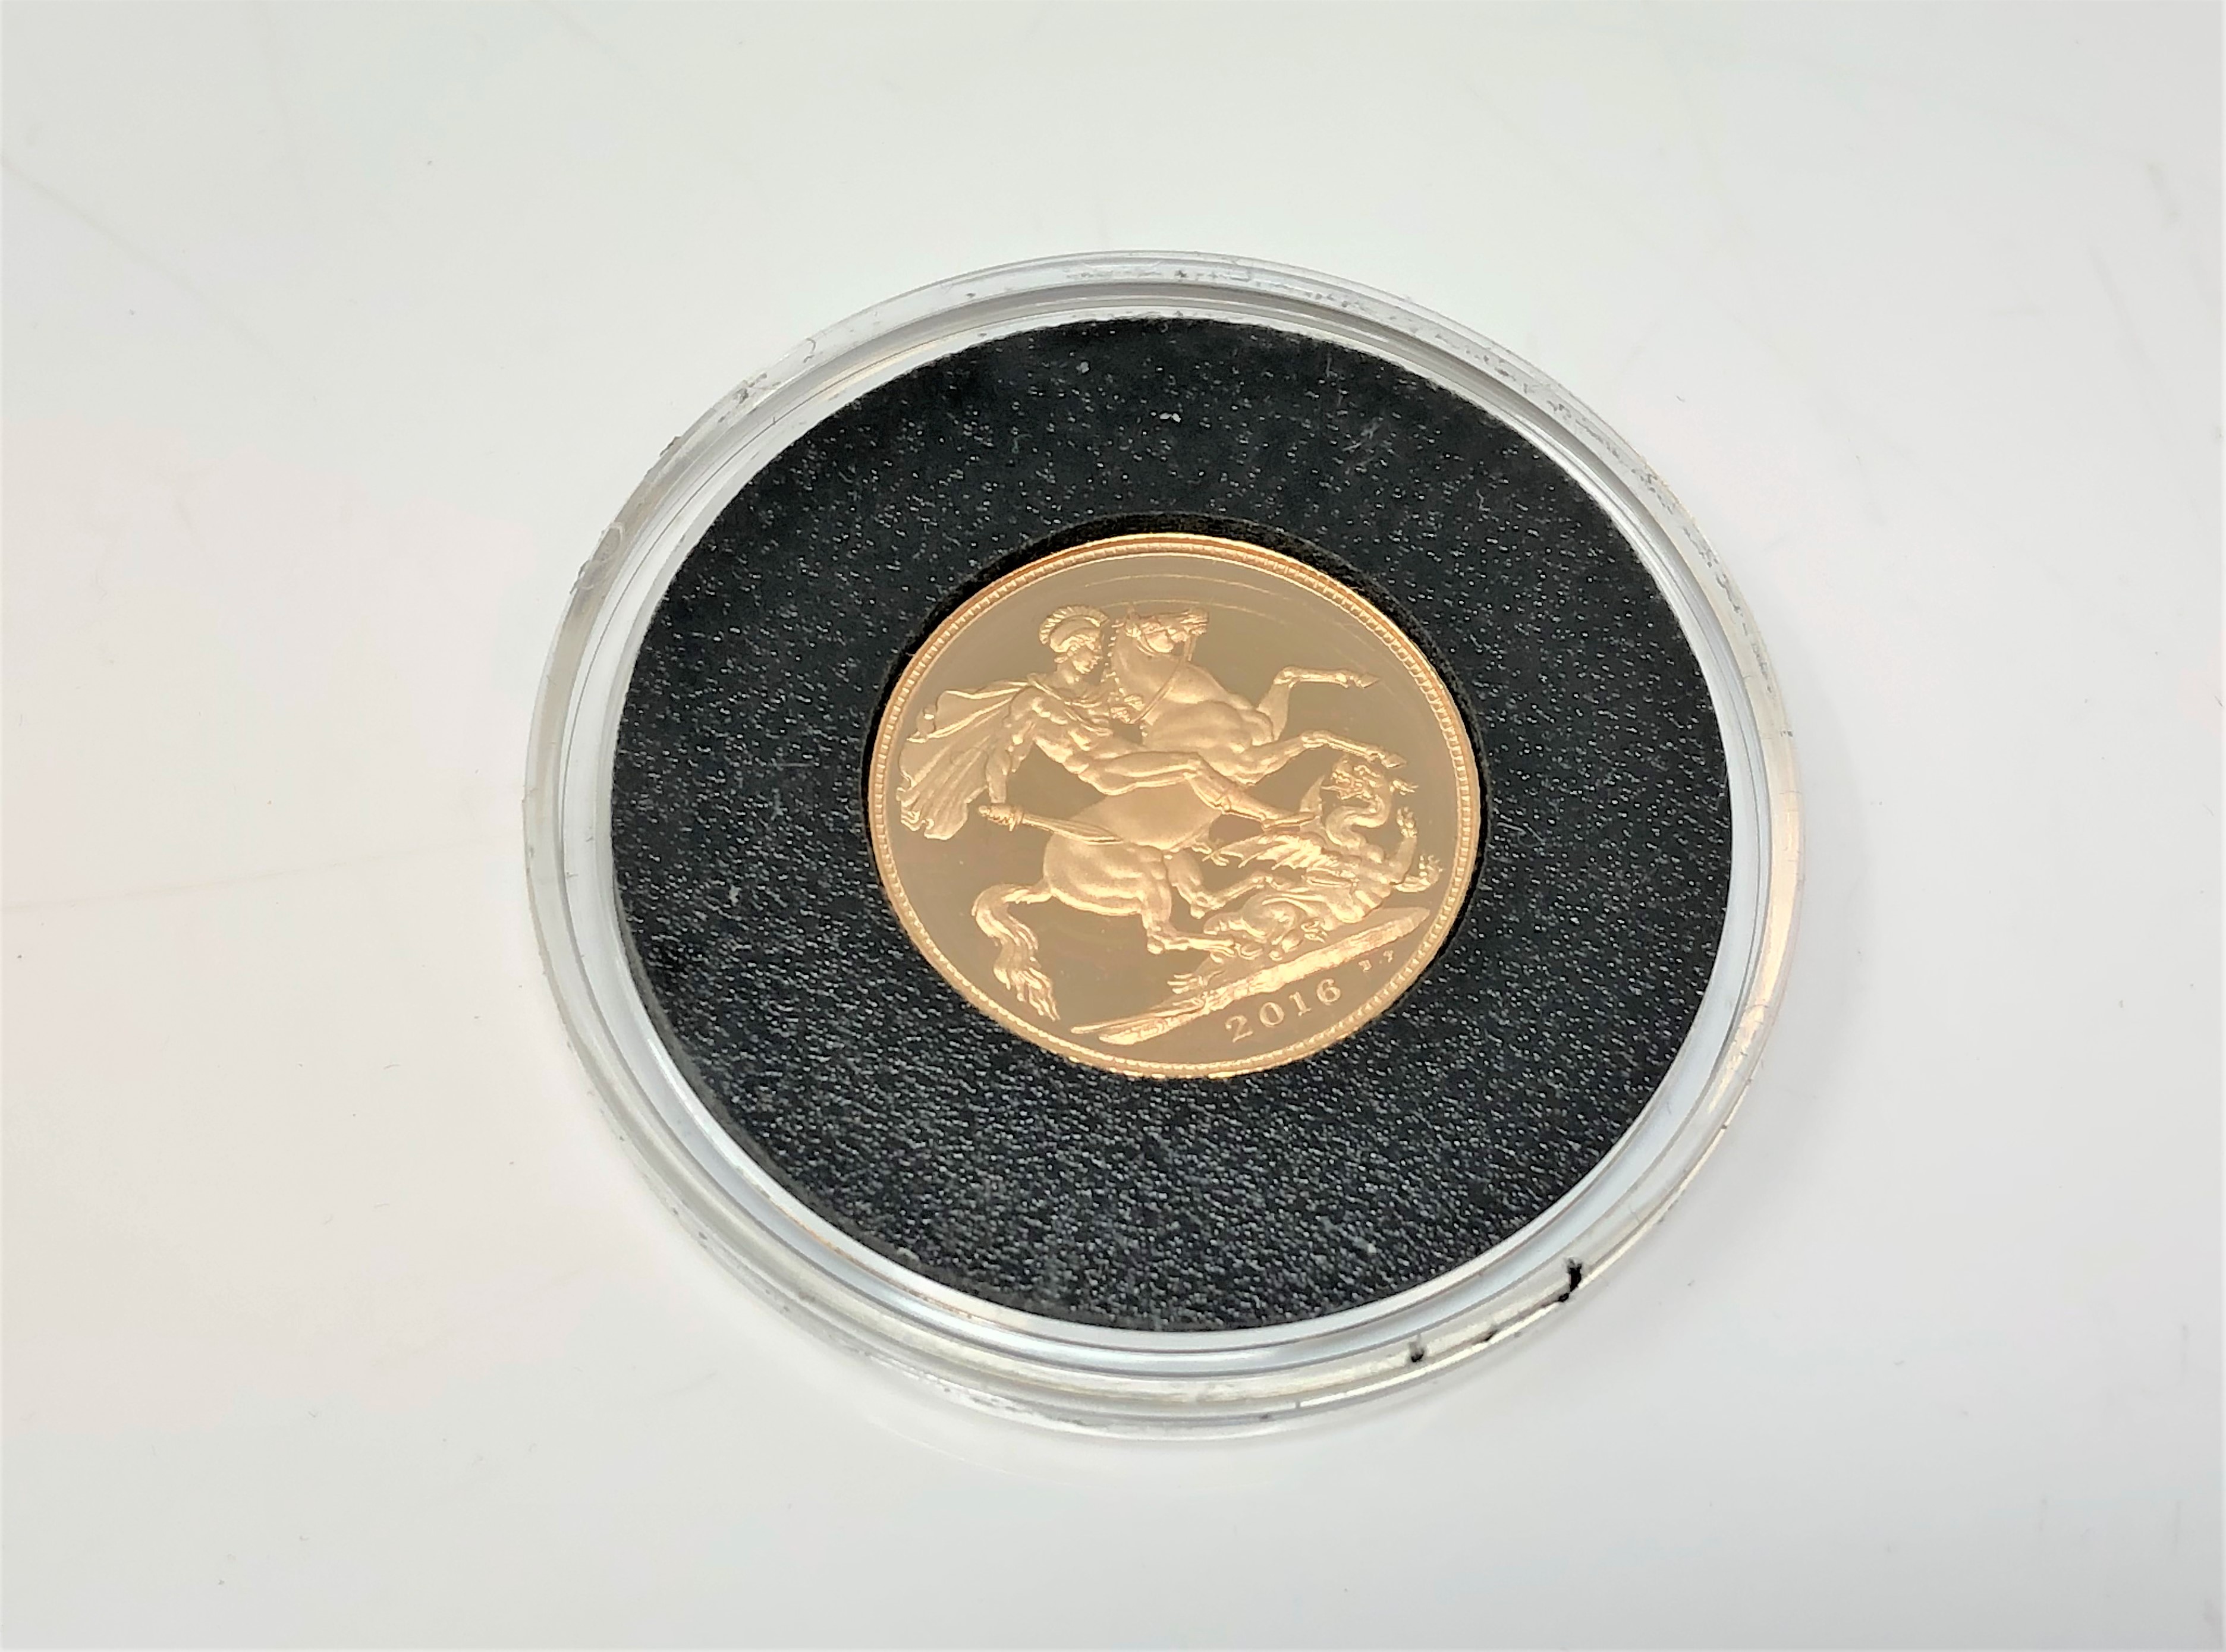 A Gold Sovereign 2016.